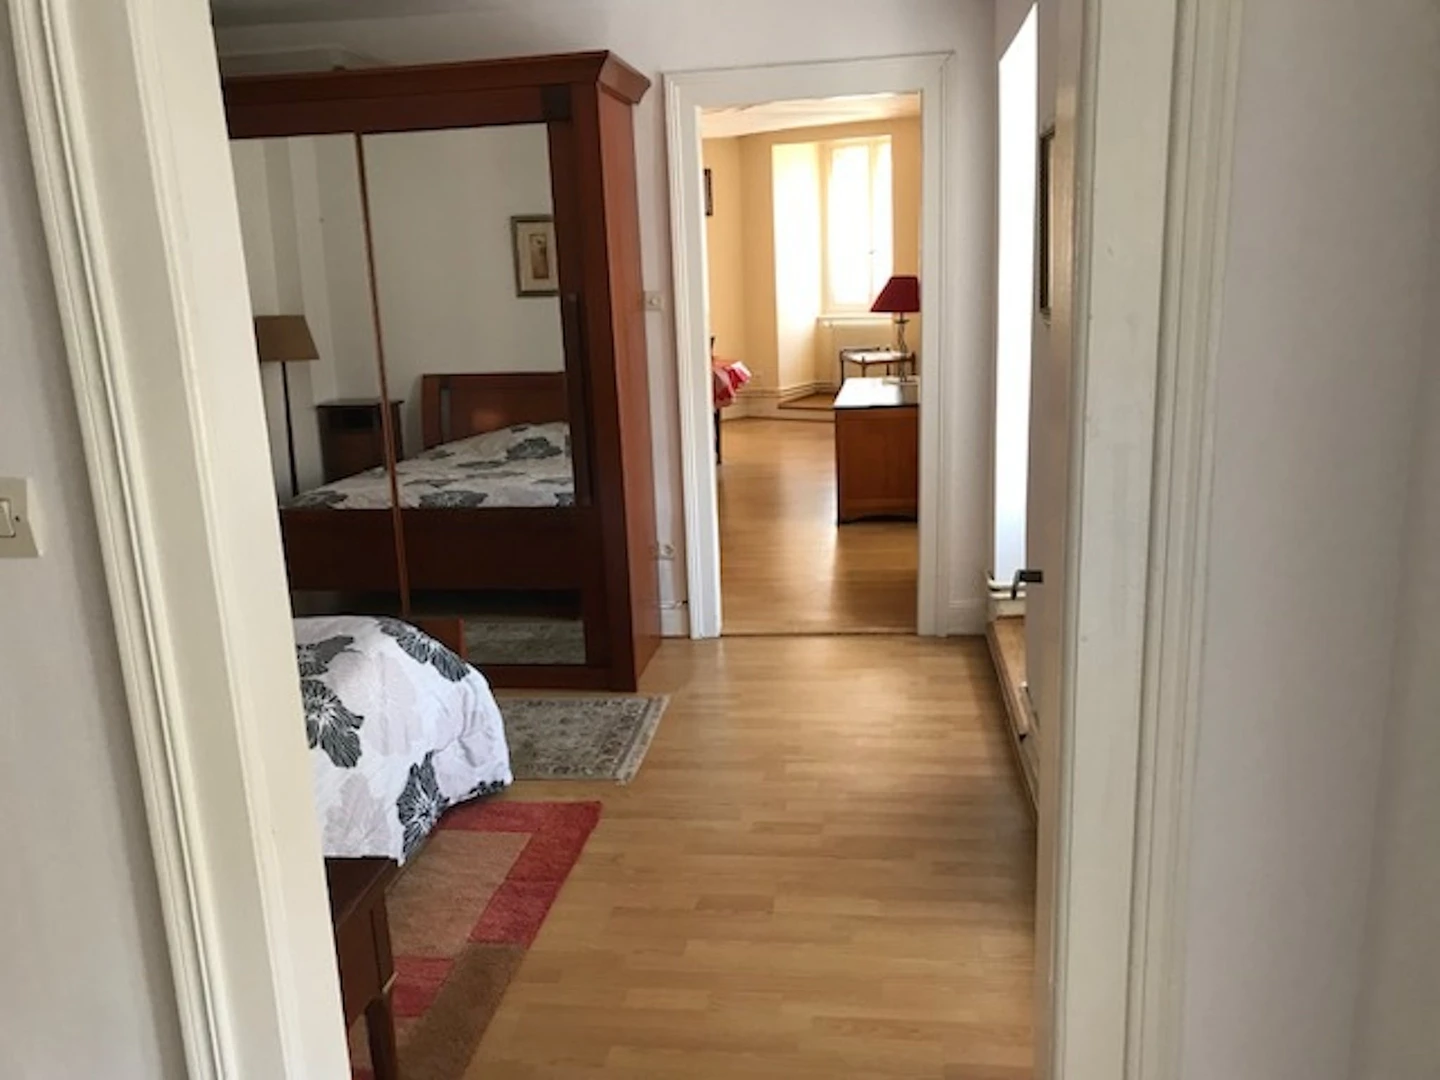 Strasbourg içinde 3 yatak odalı konaklama